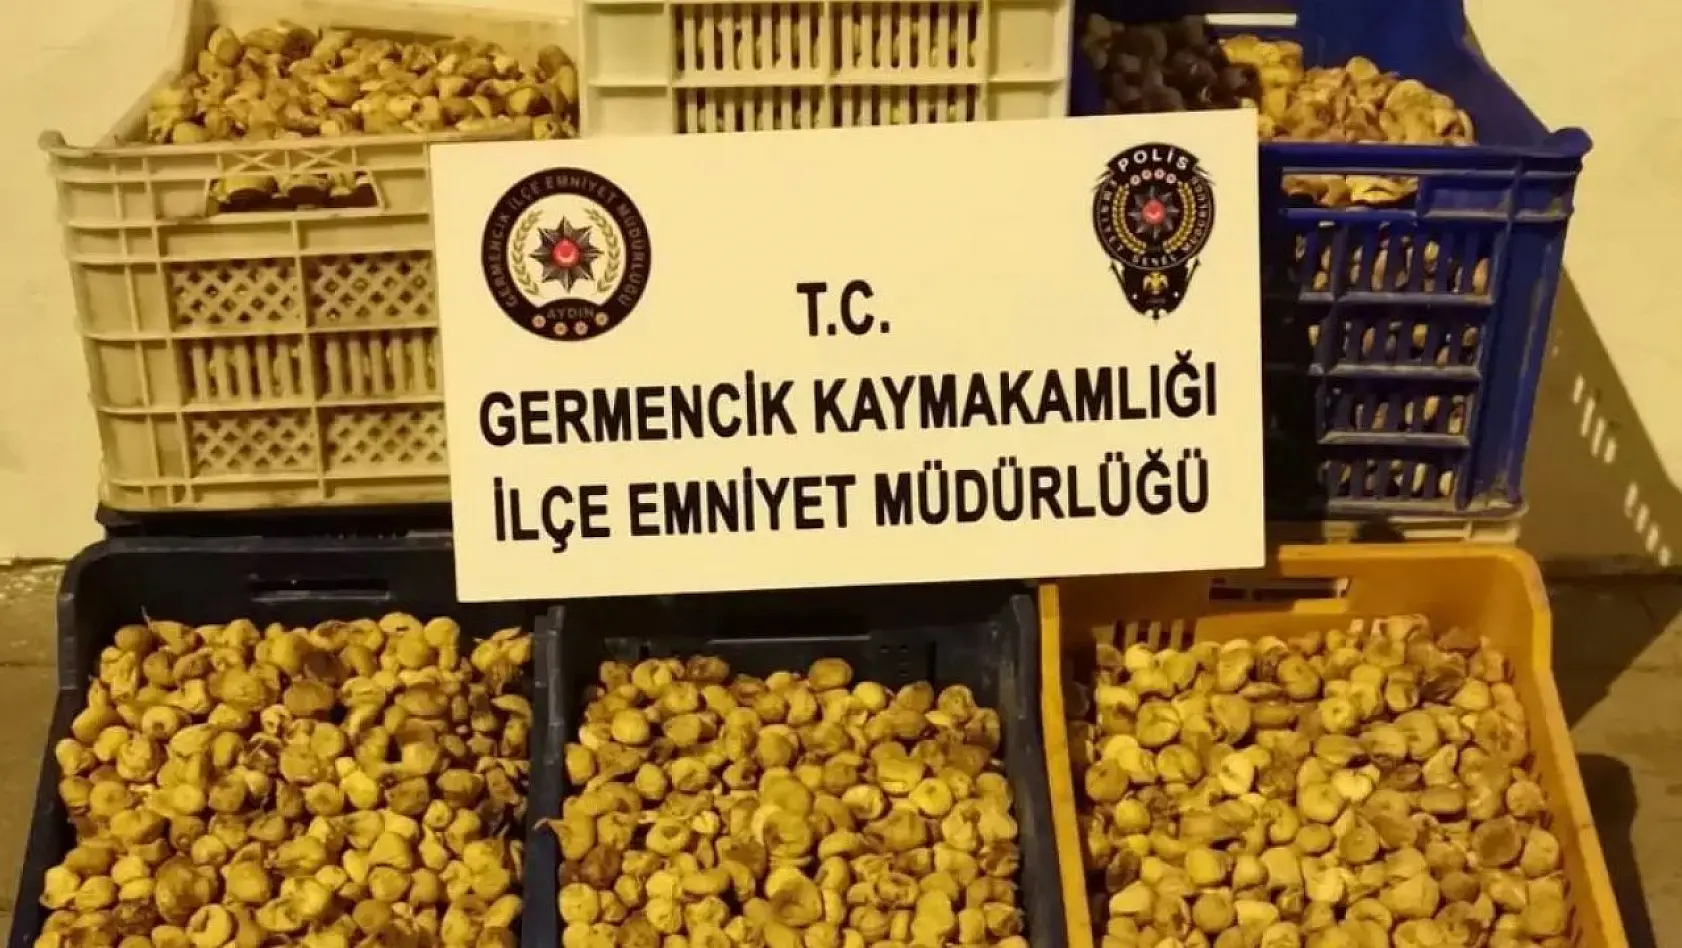 Germencik'te 450 kilogram incir çalan şüpheliler yakalandı